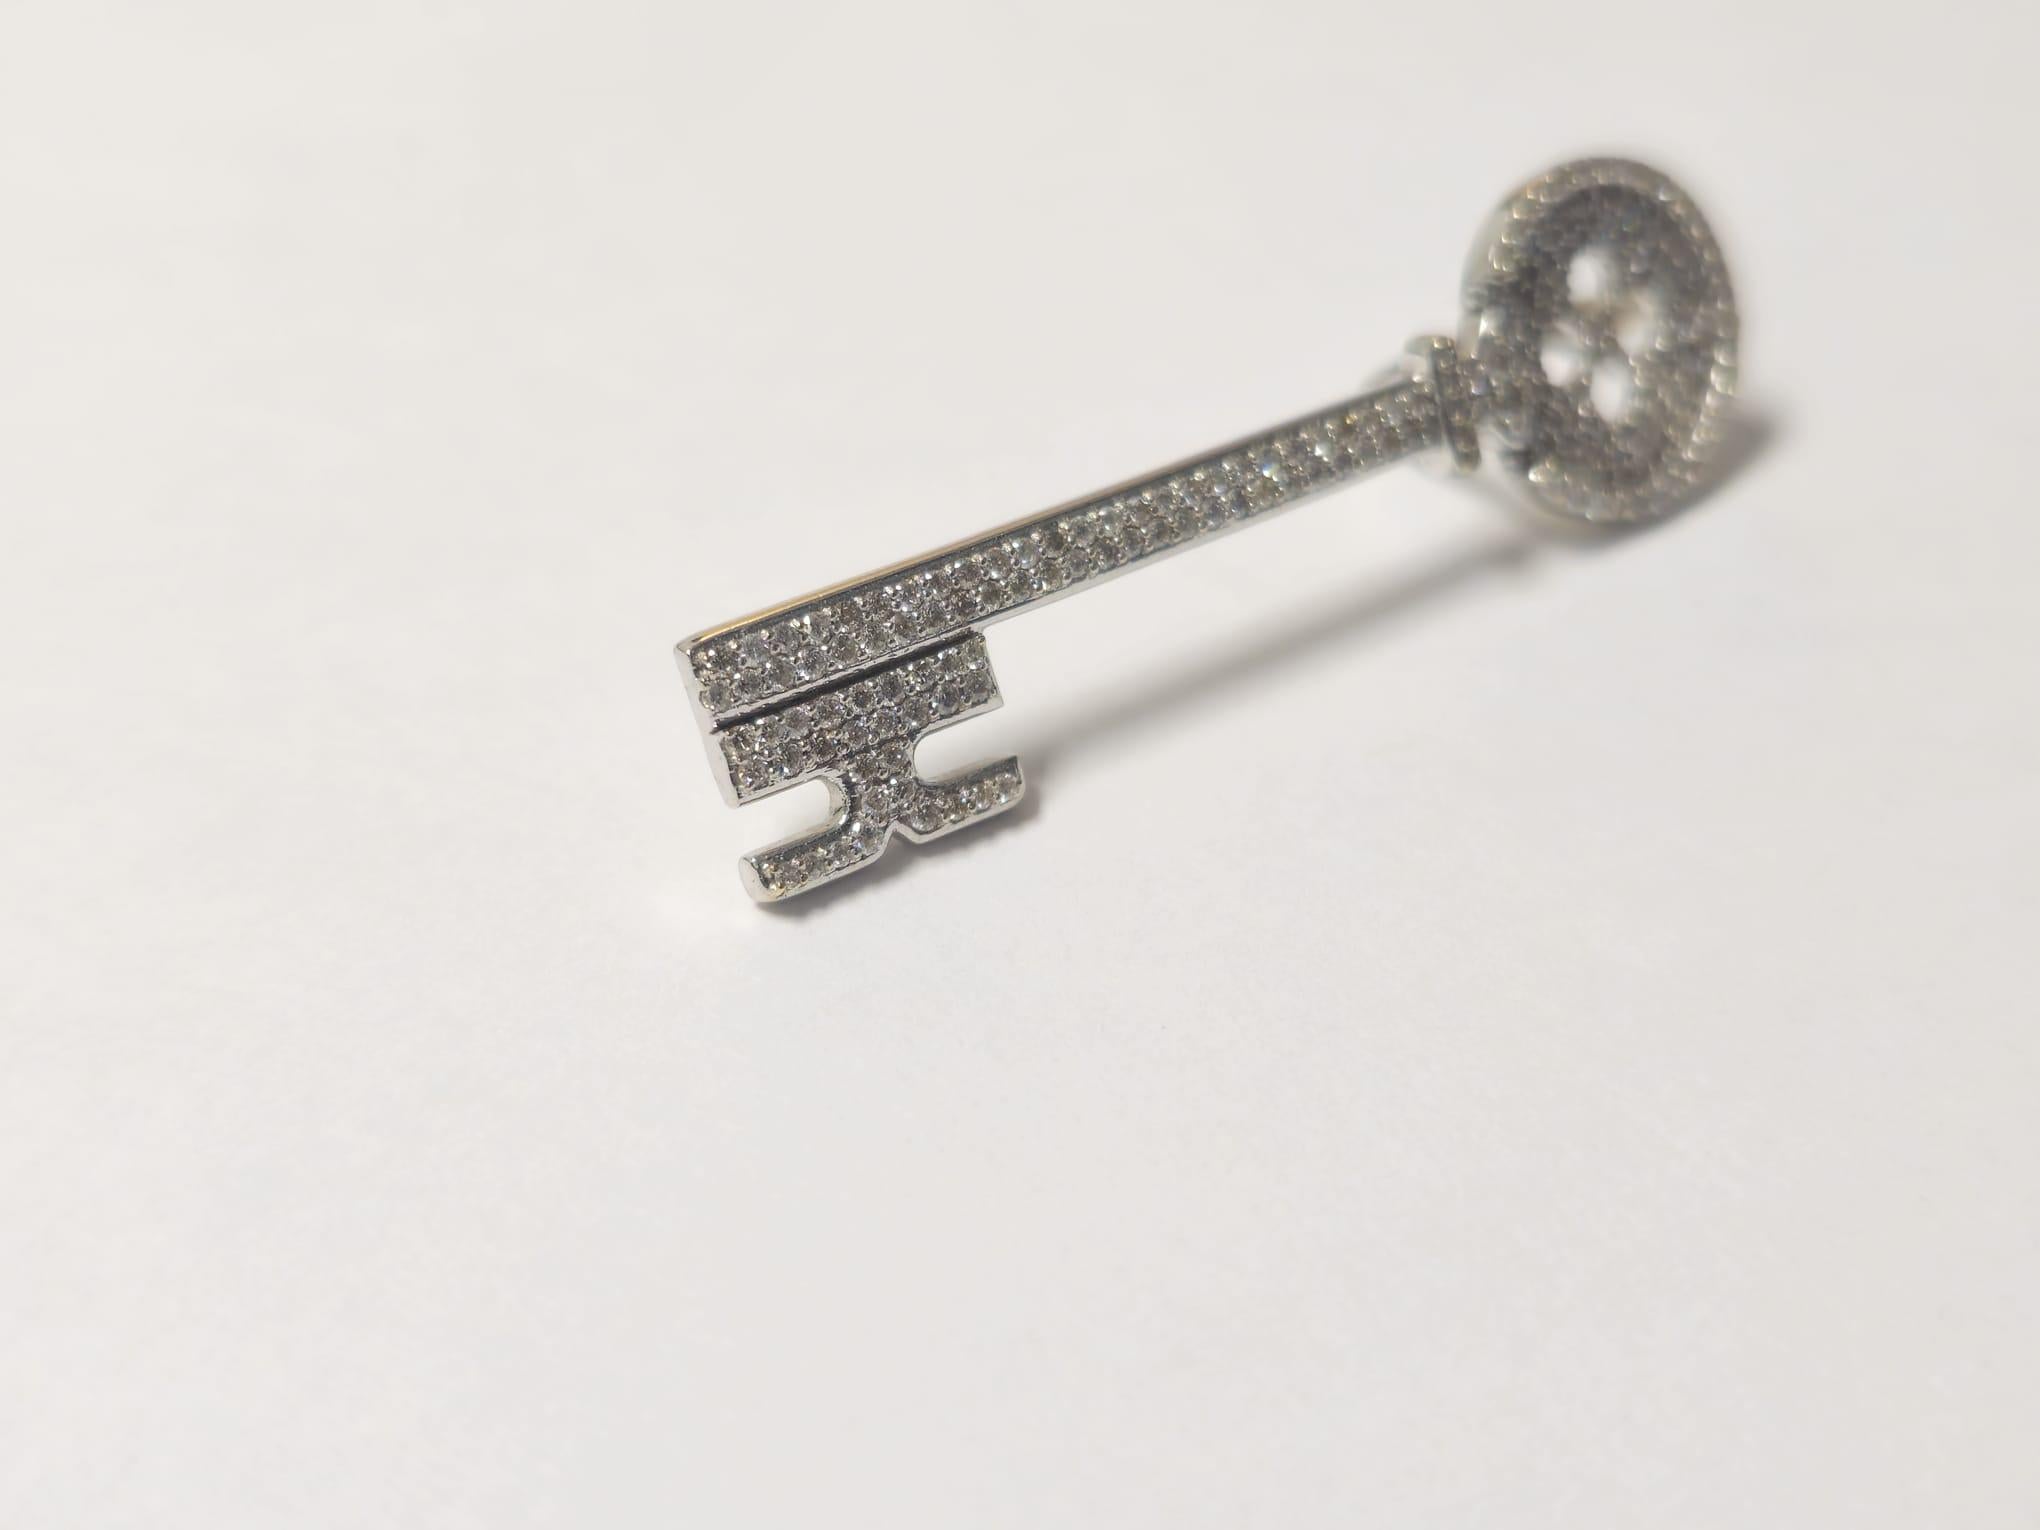 Fabriqué en or 14k, ce pendentif clé pèse 6,9 grammes et mesure 2 x 0,60 pouces. Il est orné de 2 carats de diamants de pureté SI1 et de couleur G. Le pendentif est un bijou élégant et substantiel, parfait pour ajouter de l'élégance à n'importe quel